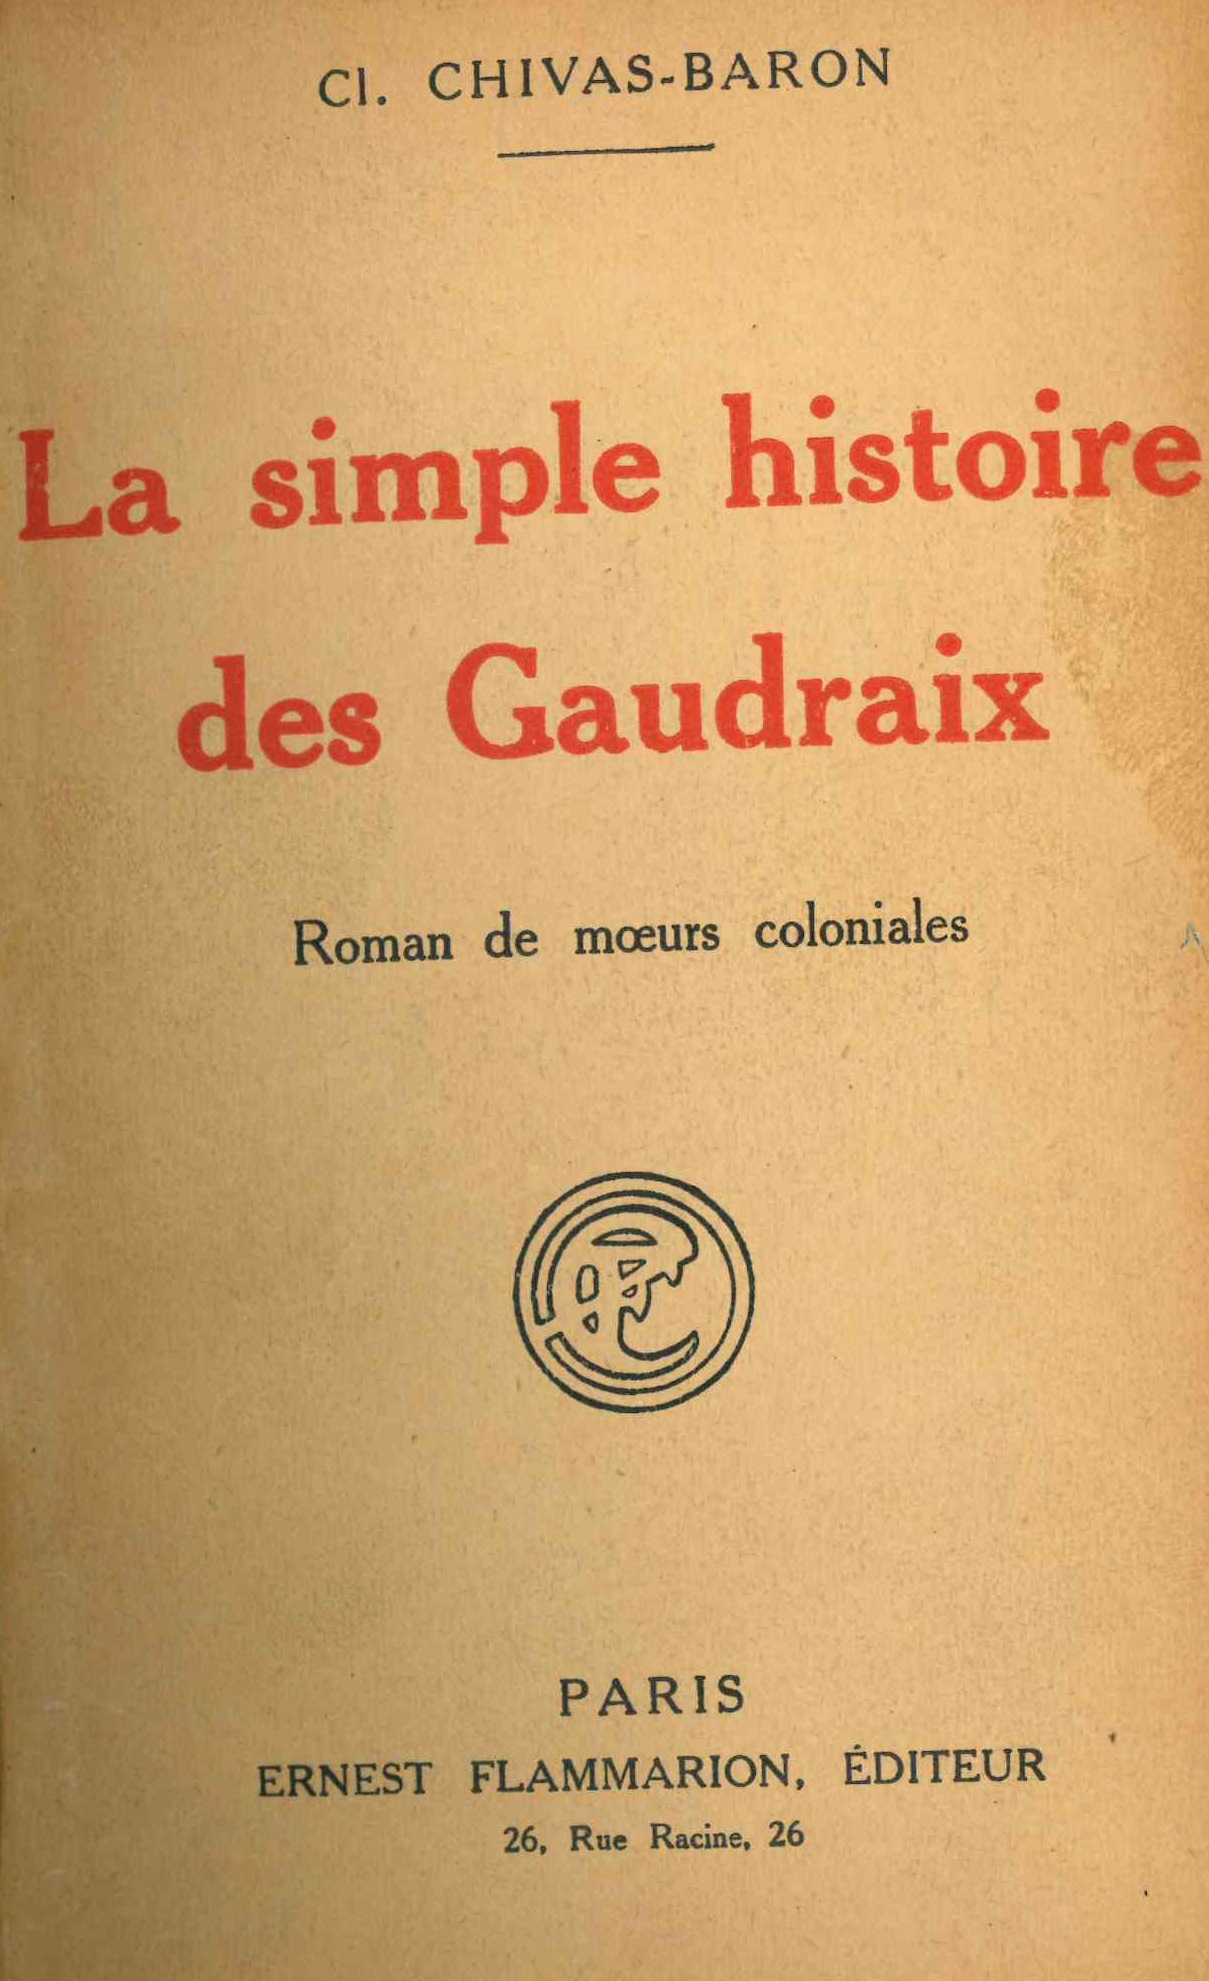 Chivas-Baron (Clotilde), La simple histoire des Gaudraix : roman de moeurs coloniales, Paris, Flammarion, 1923